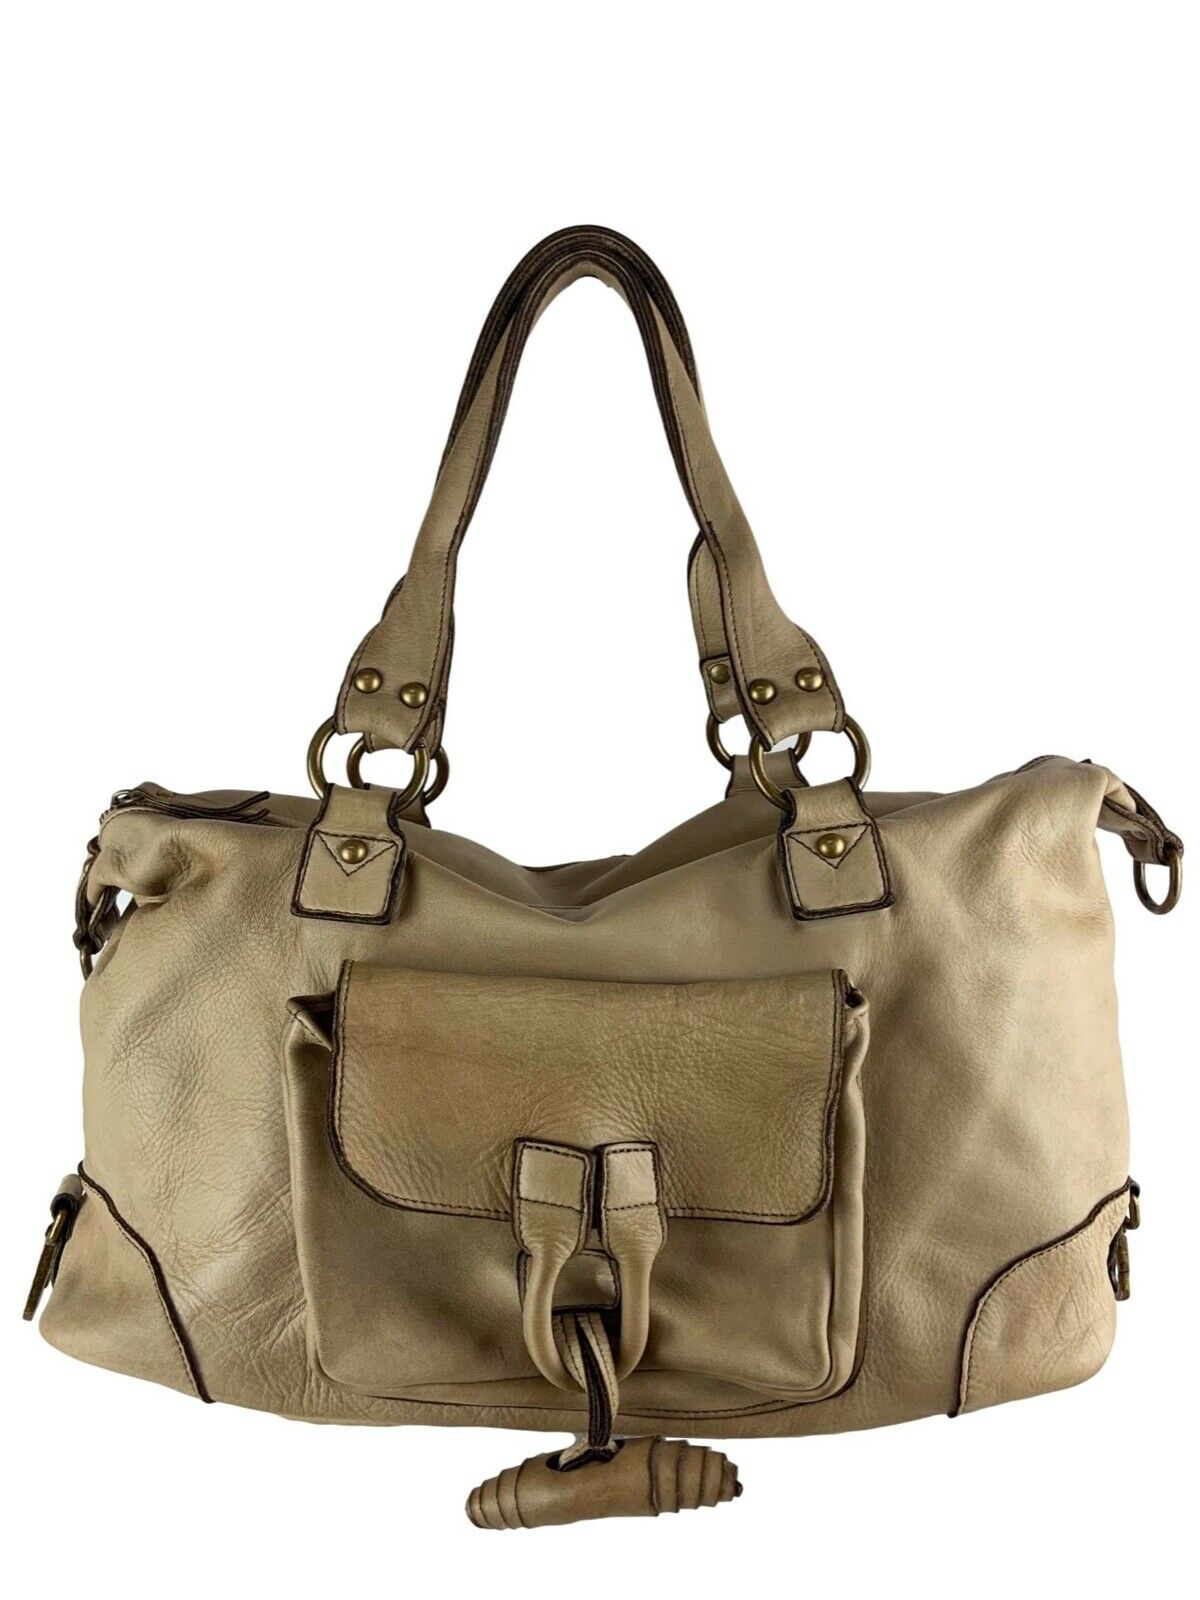 BZNA Bag Auri Taupe Italy Designer Damen Handtasche Schultertasche Tasche